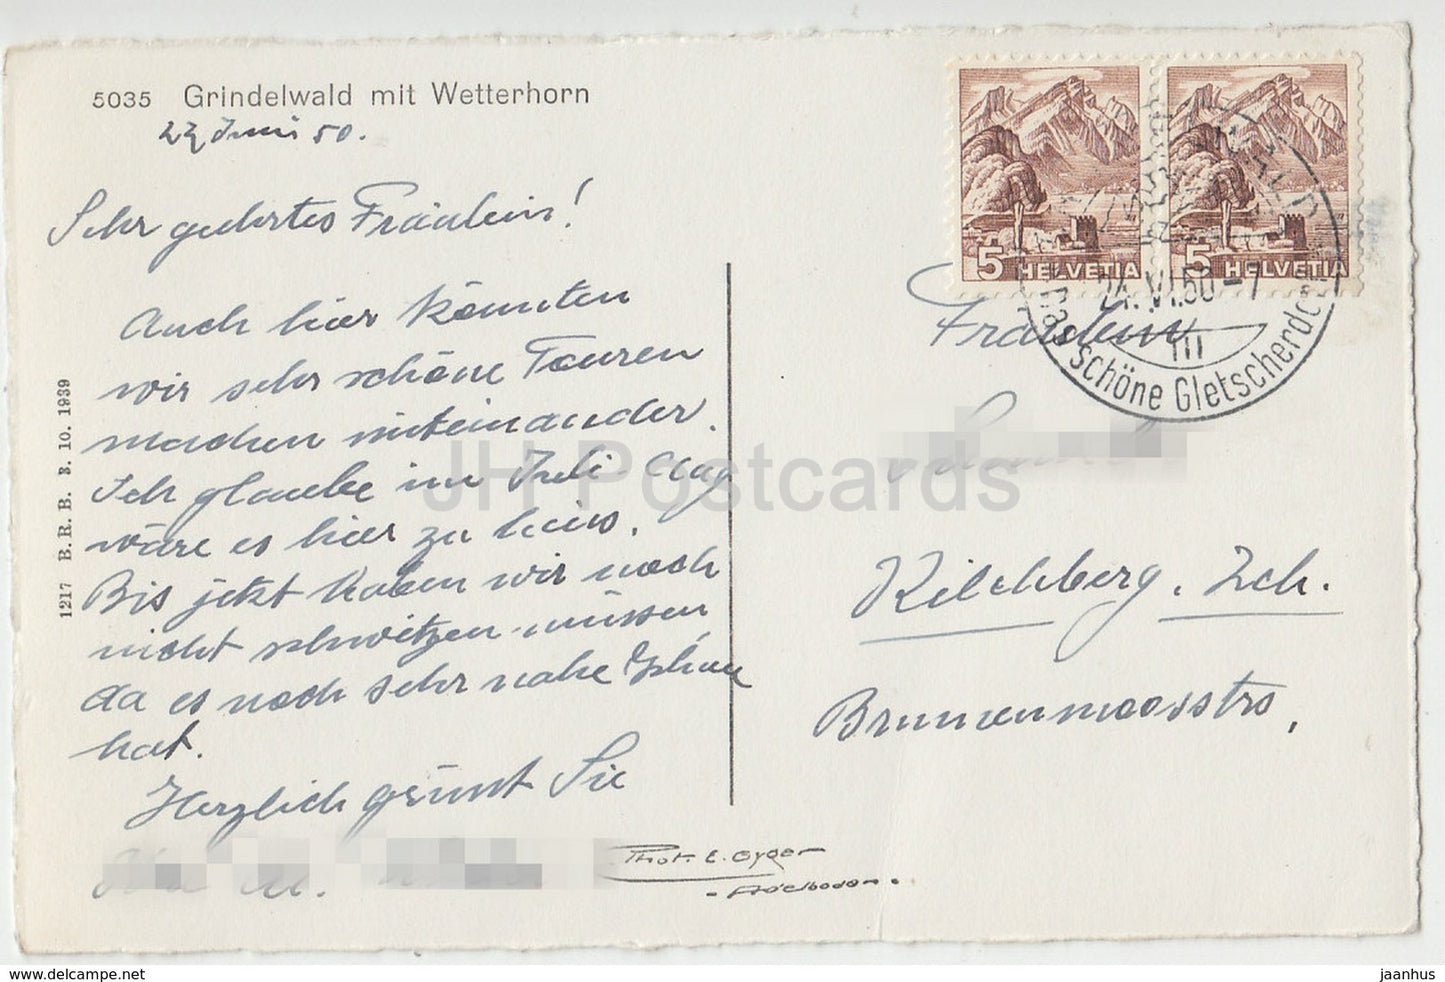 Grindelwald mit Wetterhorn - 5035 - Switzerland - 1950 - used